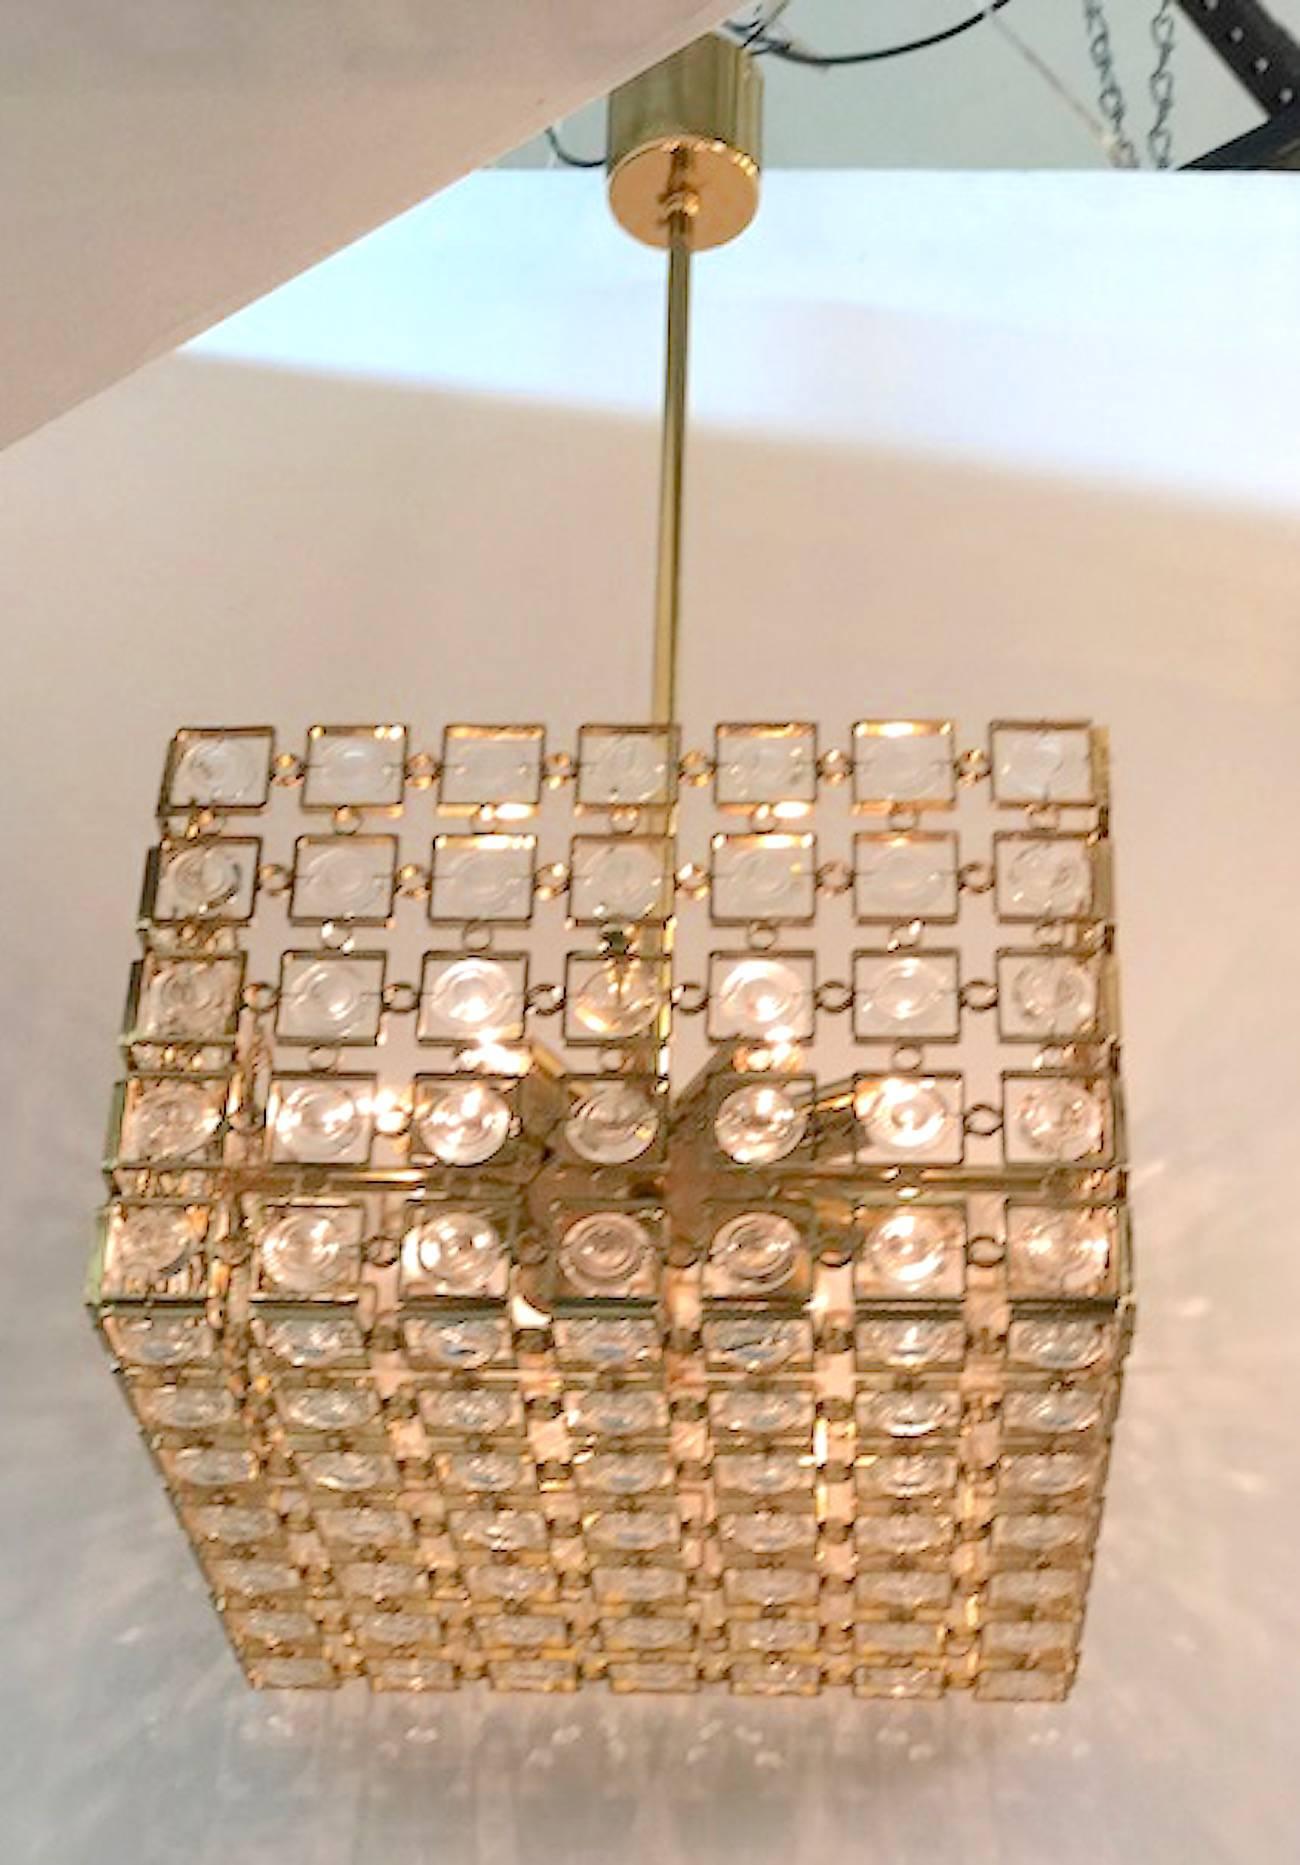 Un des deux exemplaires disponibles de ce magnifique lustre italien des années 1970 en forme de cube en or sur laiton et cristal, attribué à Sciolari d'Italie. Le deuxième lustre est la référence LU1029224067862. Les quatre côtés et le bas du lustre